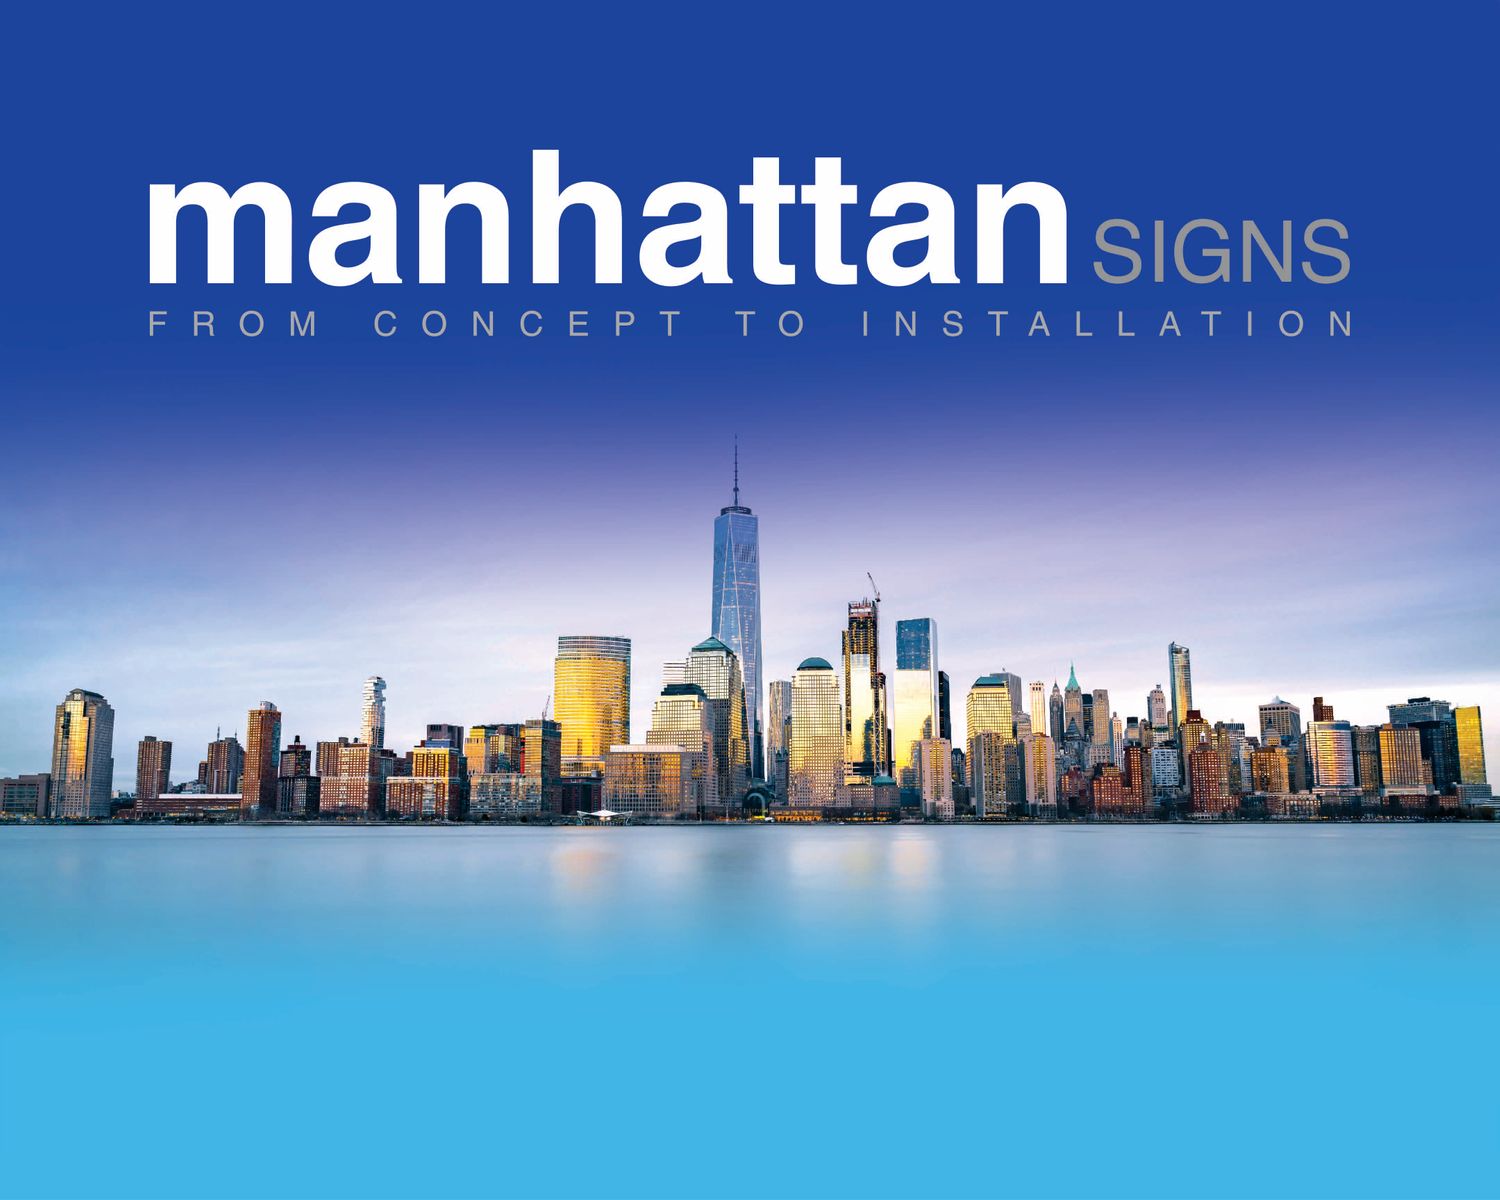 Manhattan Signs